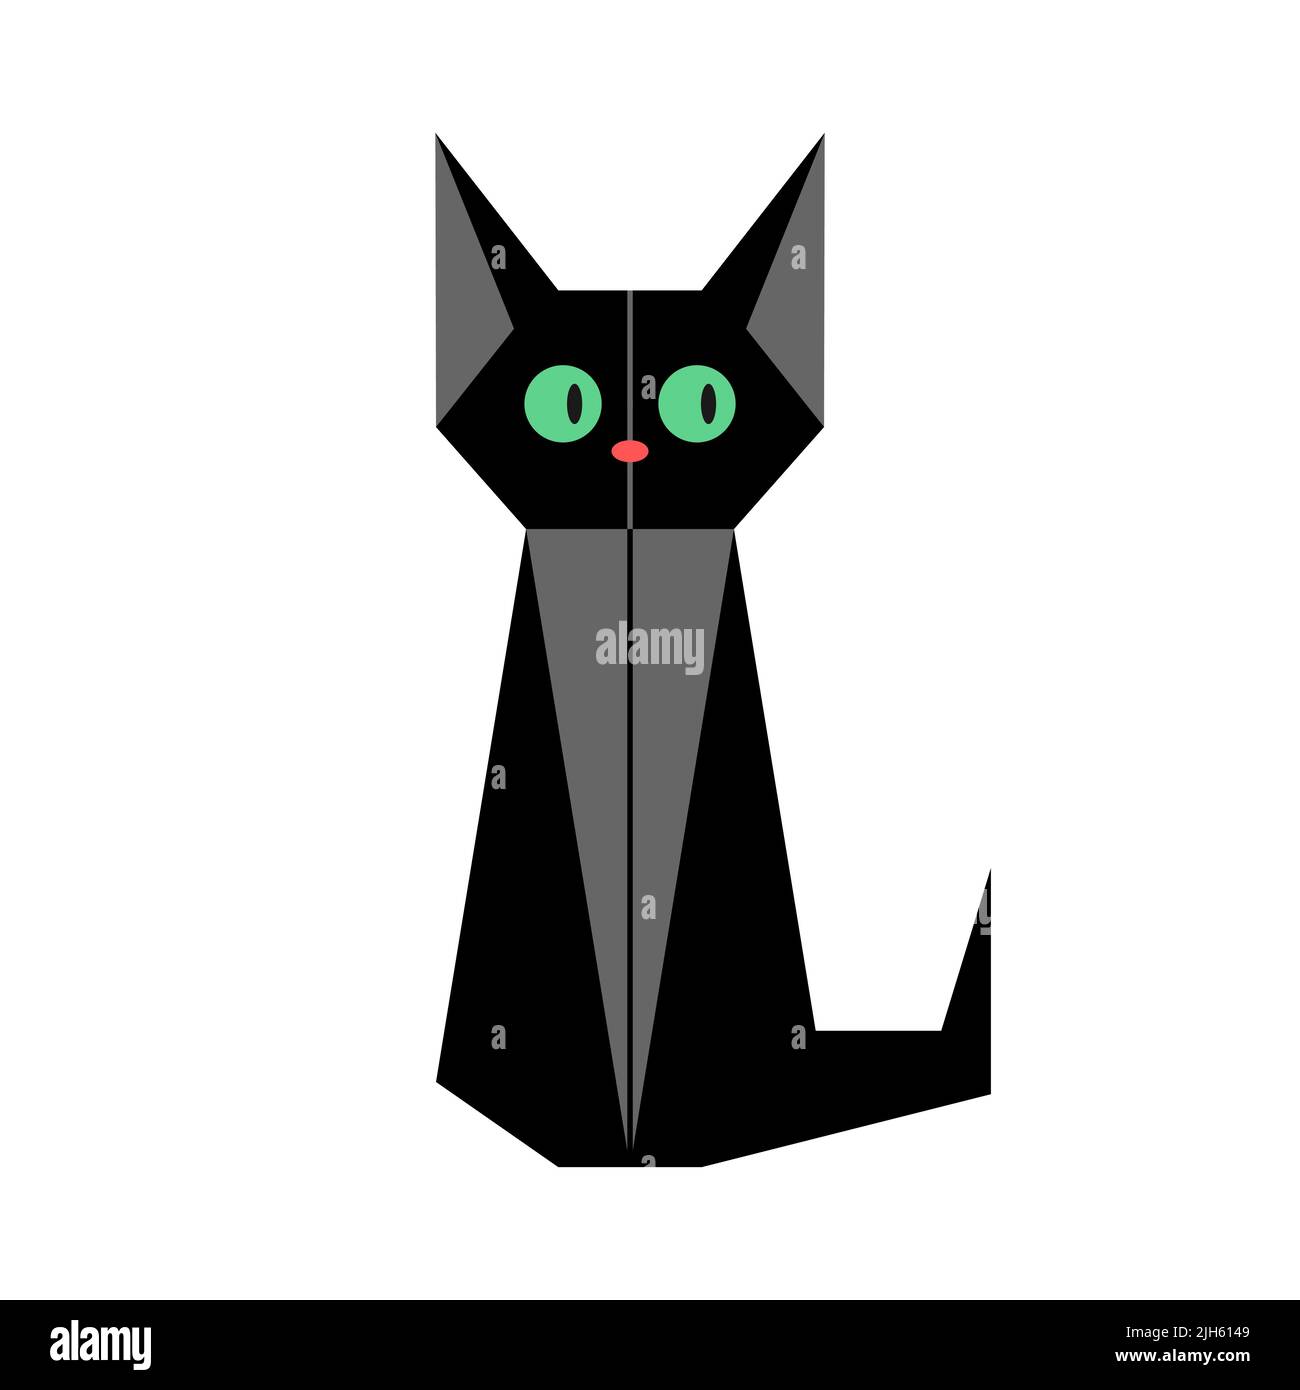 Chat noir avec les yeux verts. Style origami, fond blanc. Chat noir assis. Superstition, malchance, Halloween concept. Chaton avec de grandes oreilles regardant Illustration de Vecteur